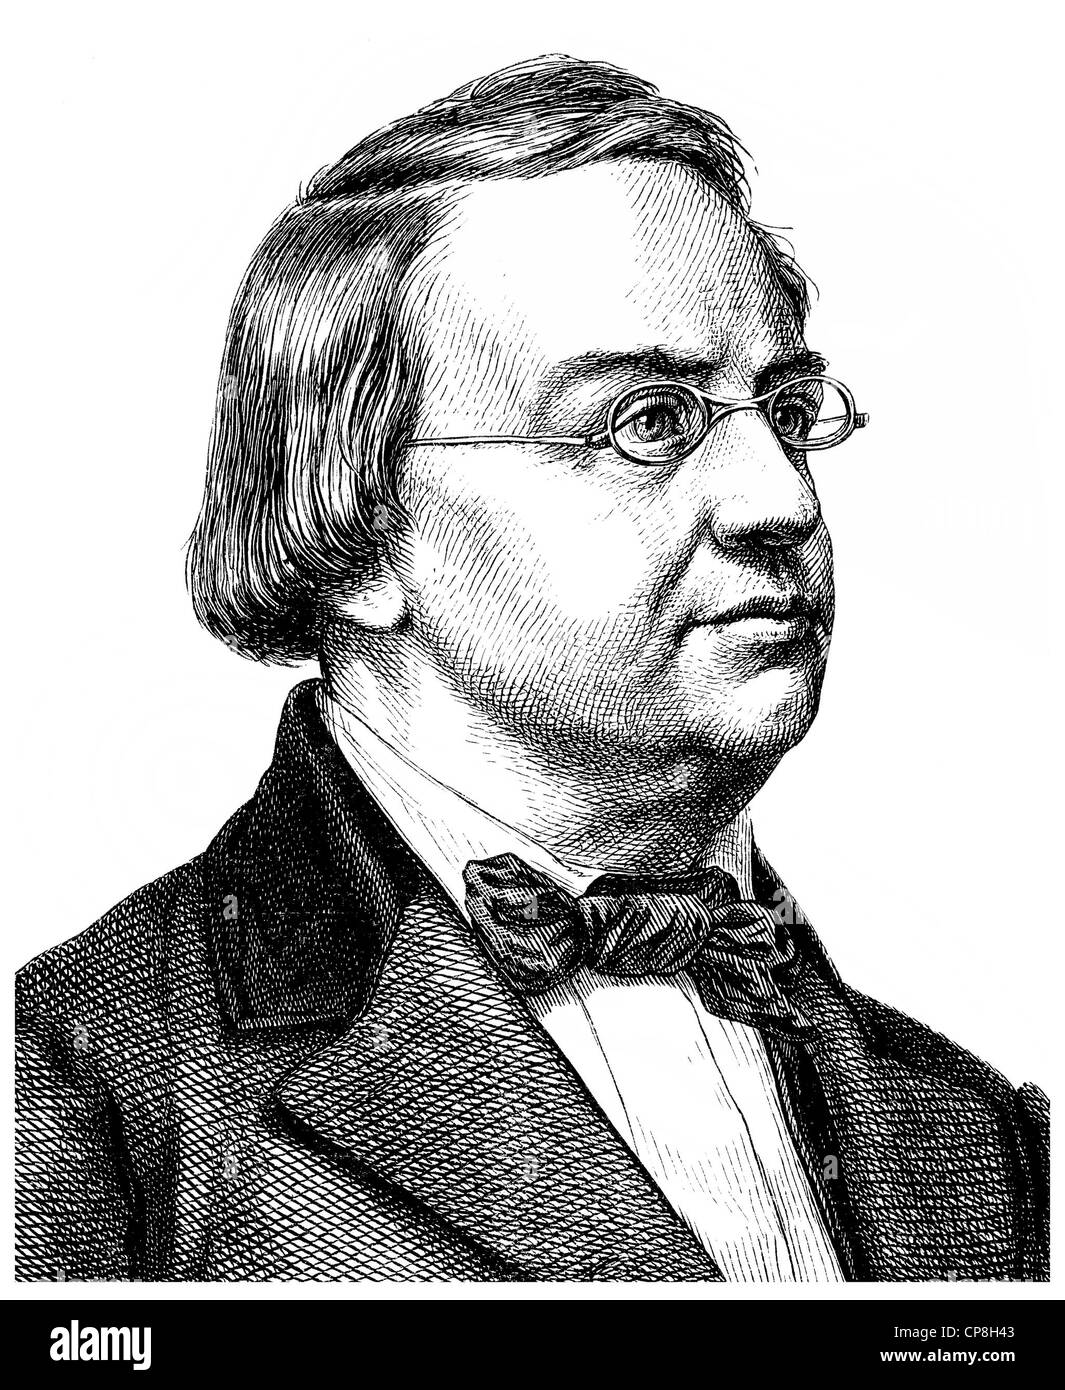 Heinrich August Marschner, 1795 - 1861, a German Romantic composer and conductor, Historische Zeichnung aus dem 19. Jahrhundert, Stock Photo